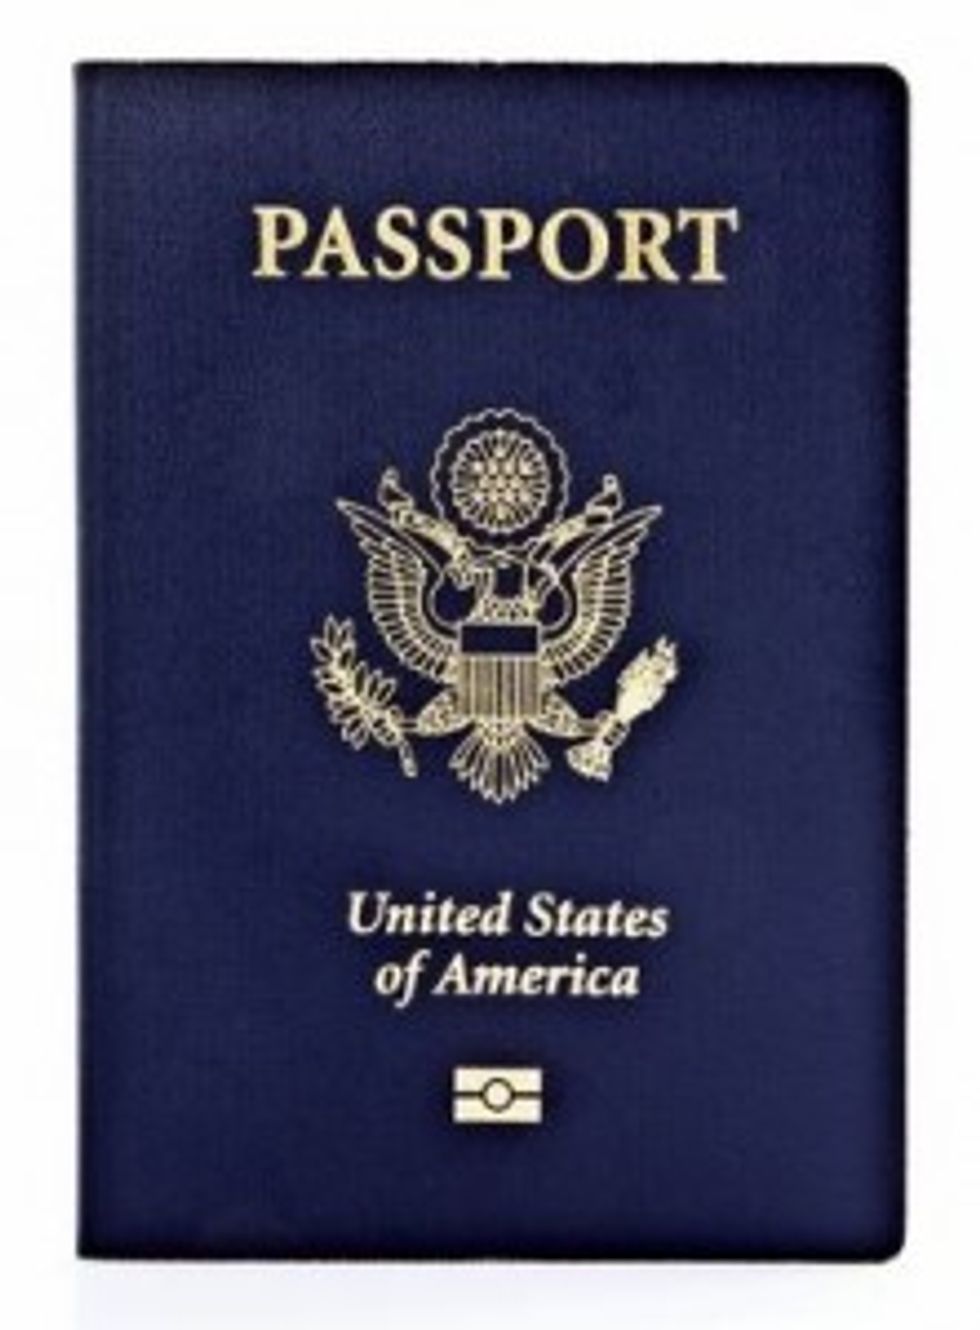 E-Passport Parts Come from a Terrorist Town (Not Prescott, Arizona)